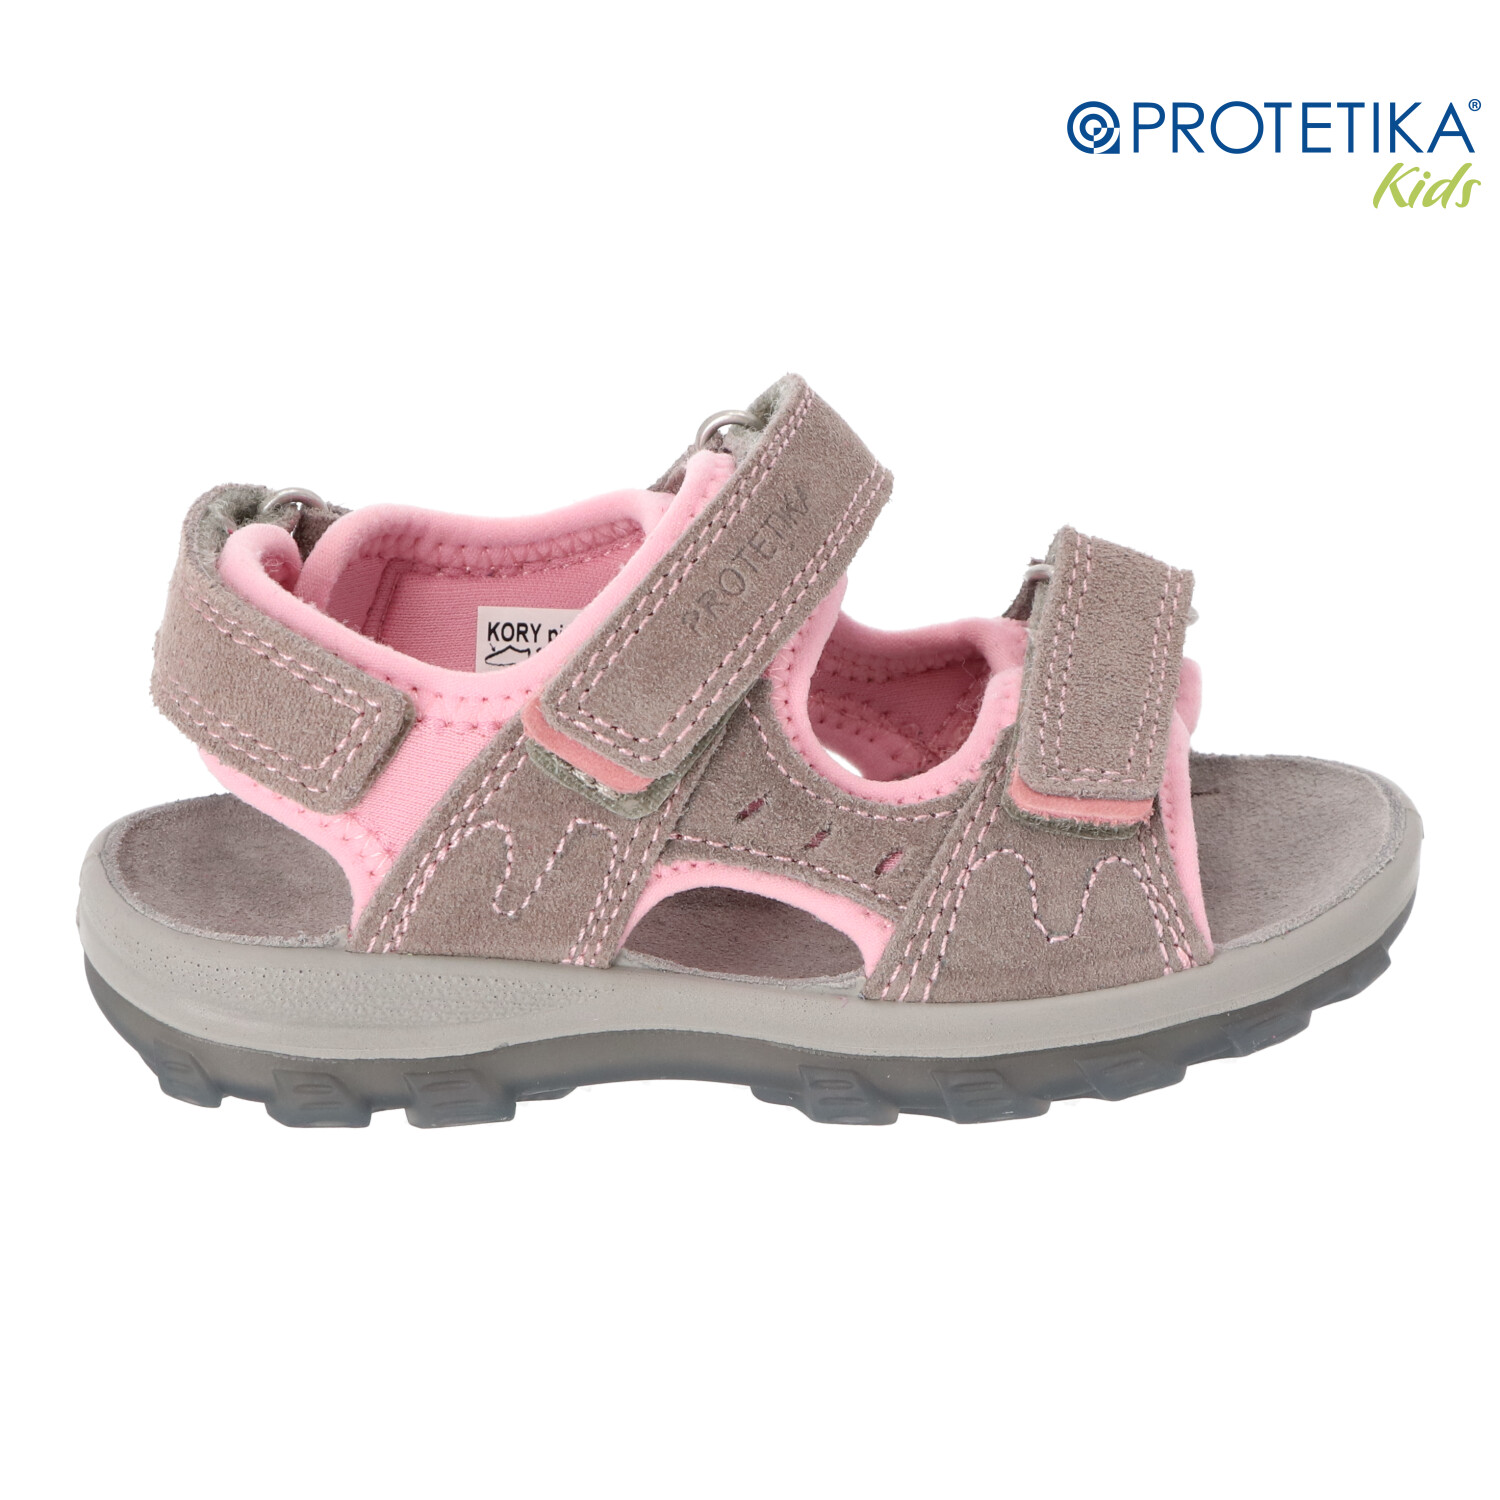 Protetika - sandále KORY pink